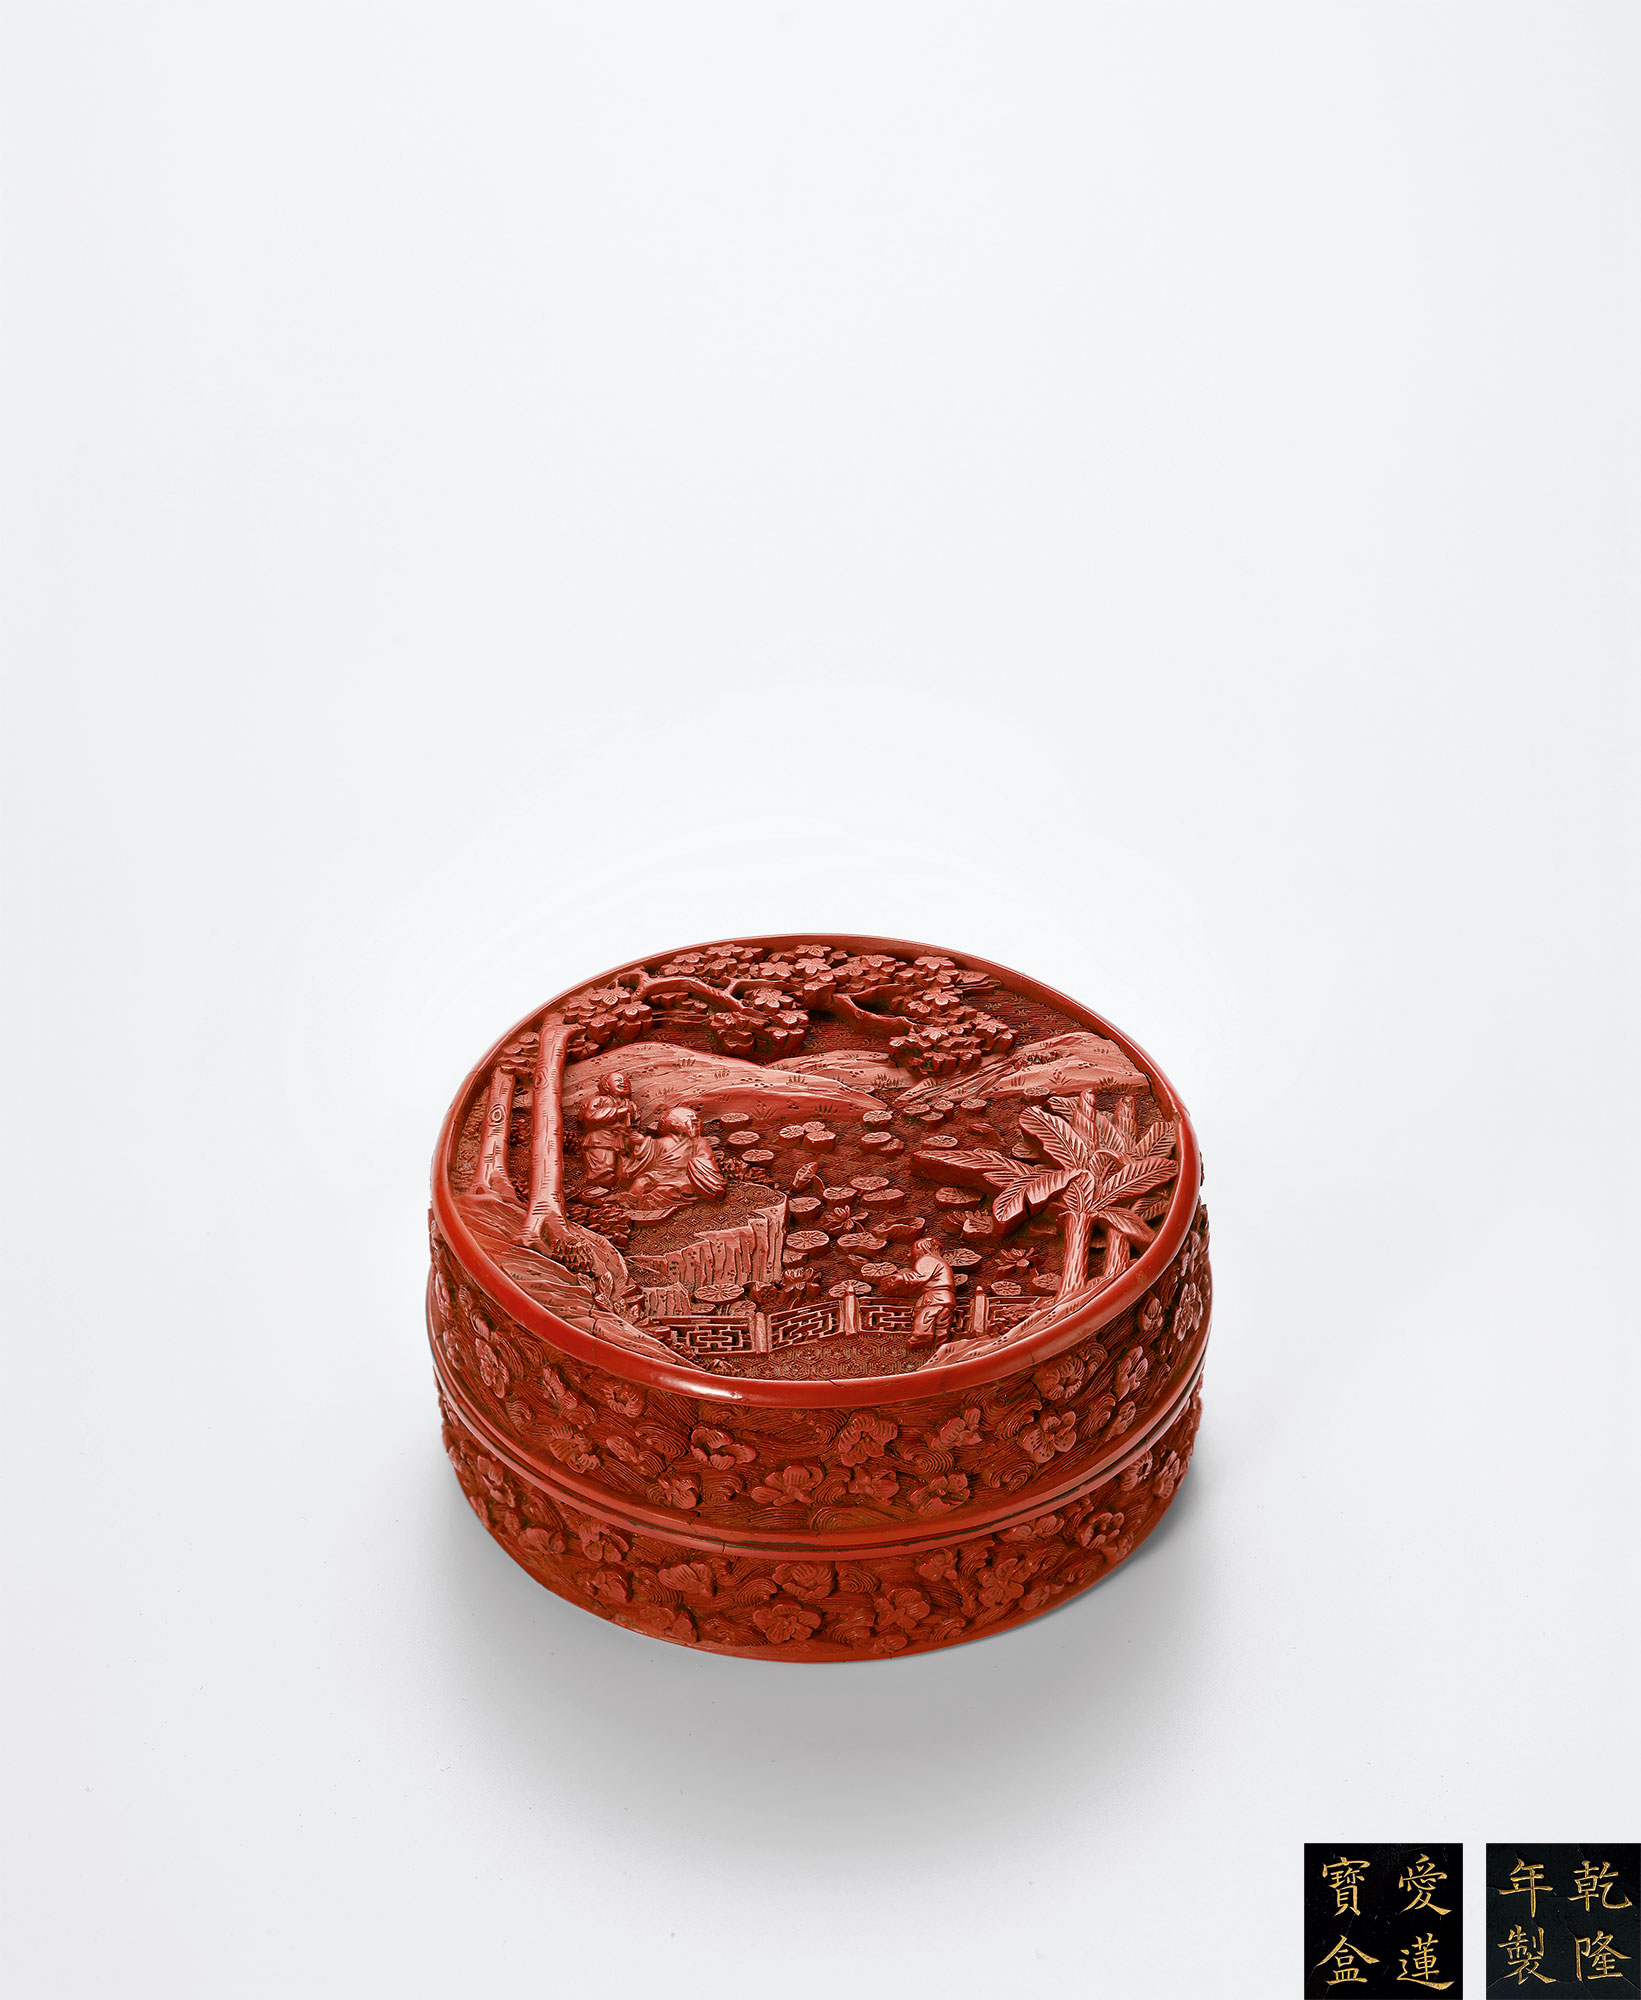 ▽鴻▽ 漆器漆彫剔紅描金彩繪山水紋花瓶一對置物古賞物中国古玩中国古美術-